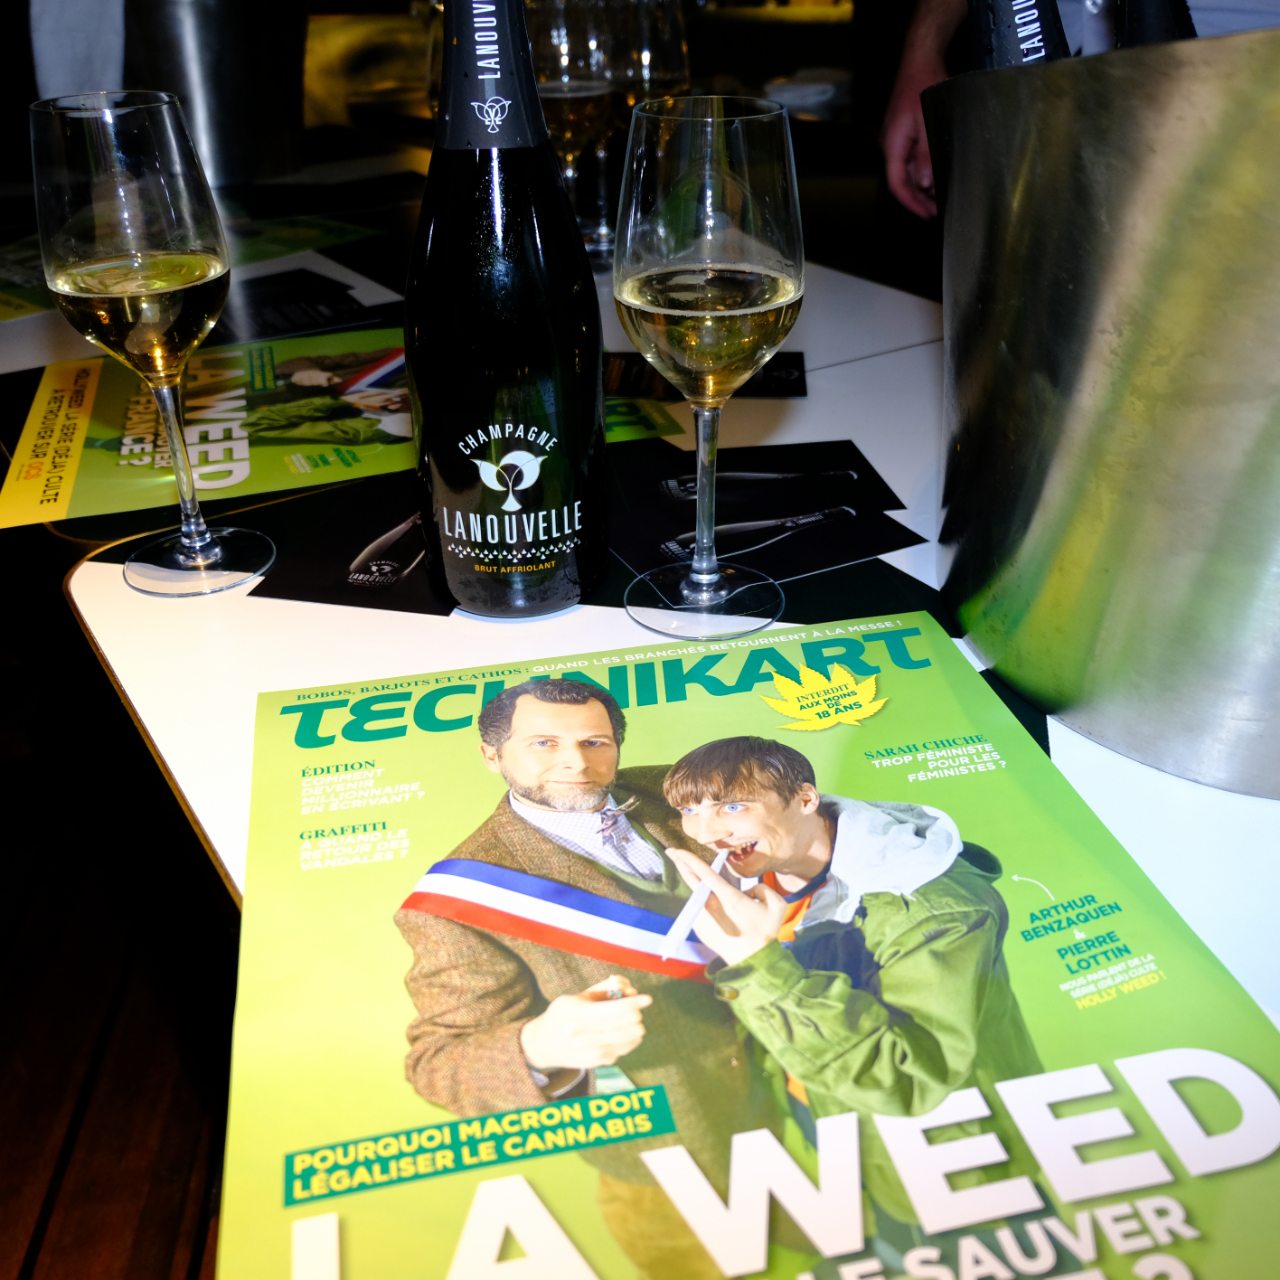 La couverture de Technikart et le Champagne Lanouvelle (avec moderation)